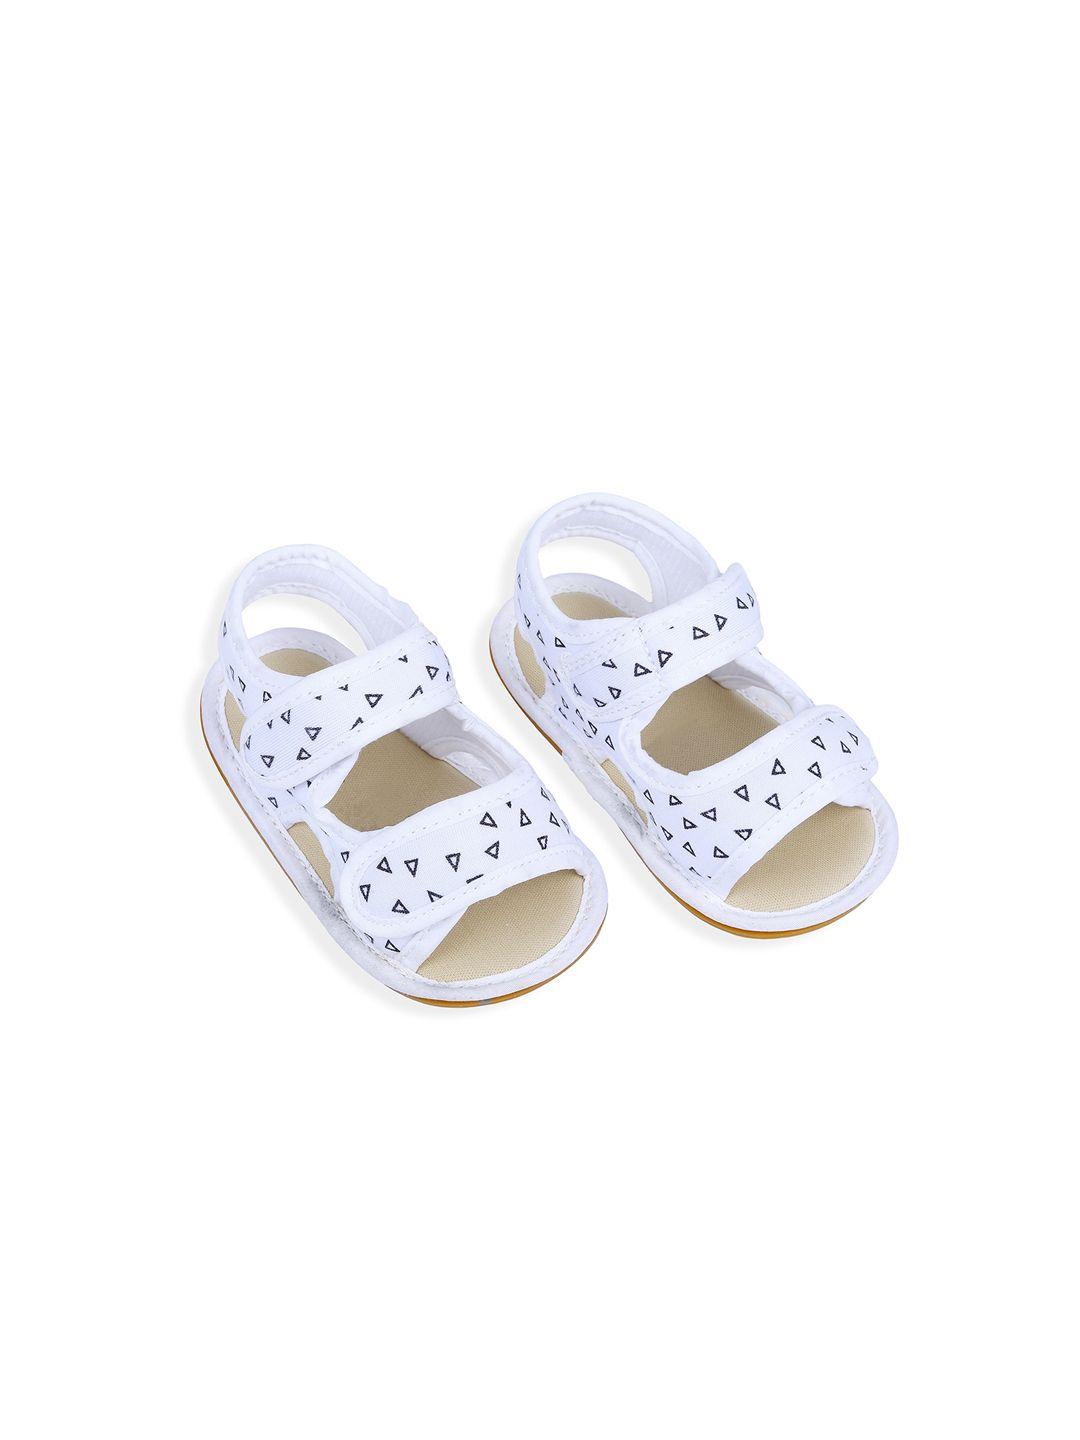 baby moo unisex kids comfort sandals